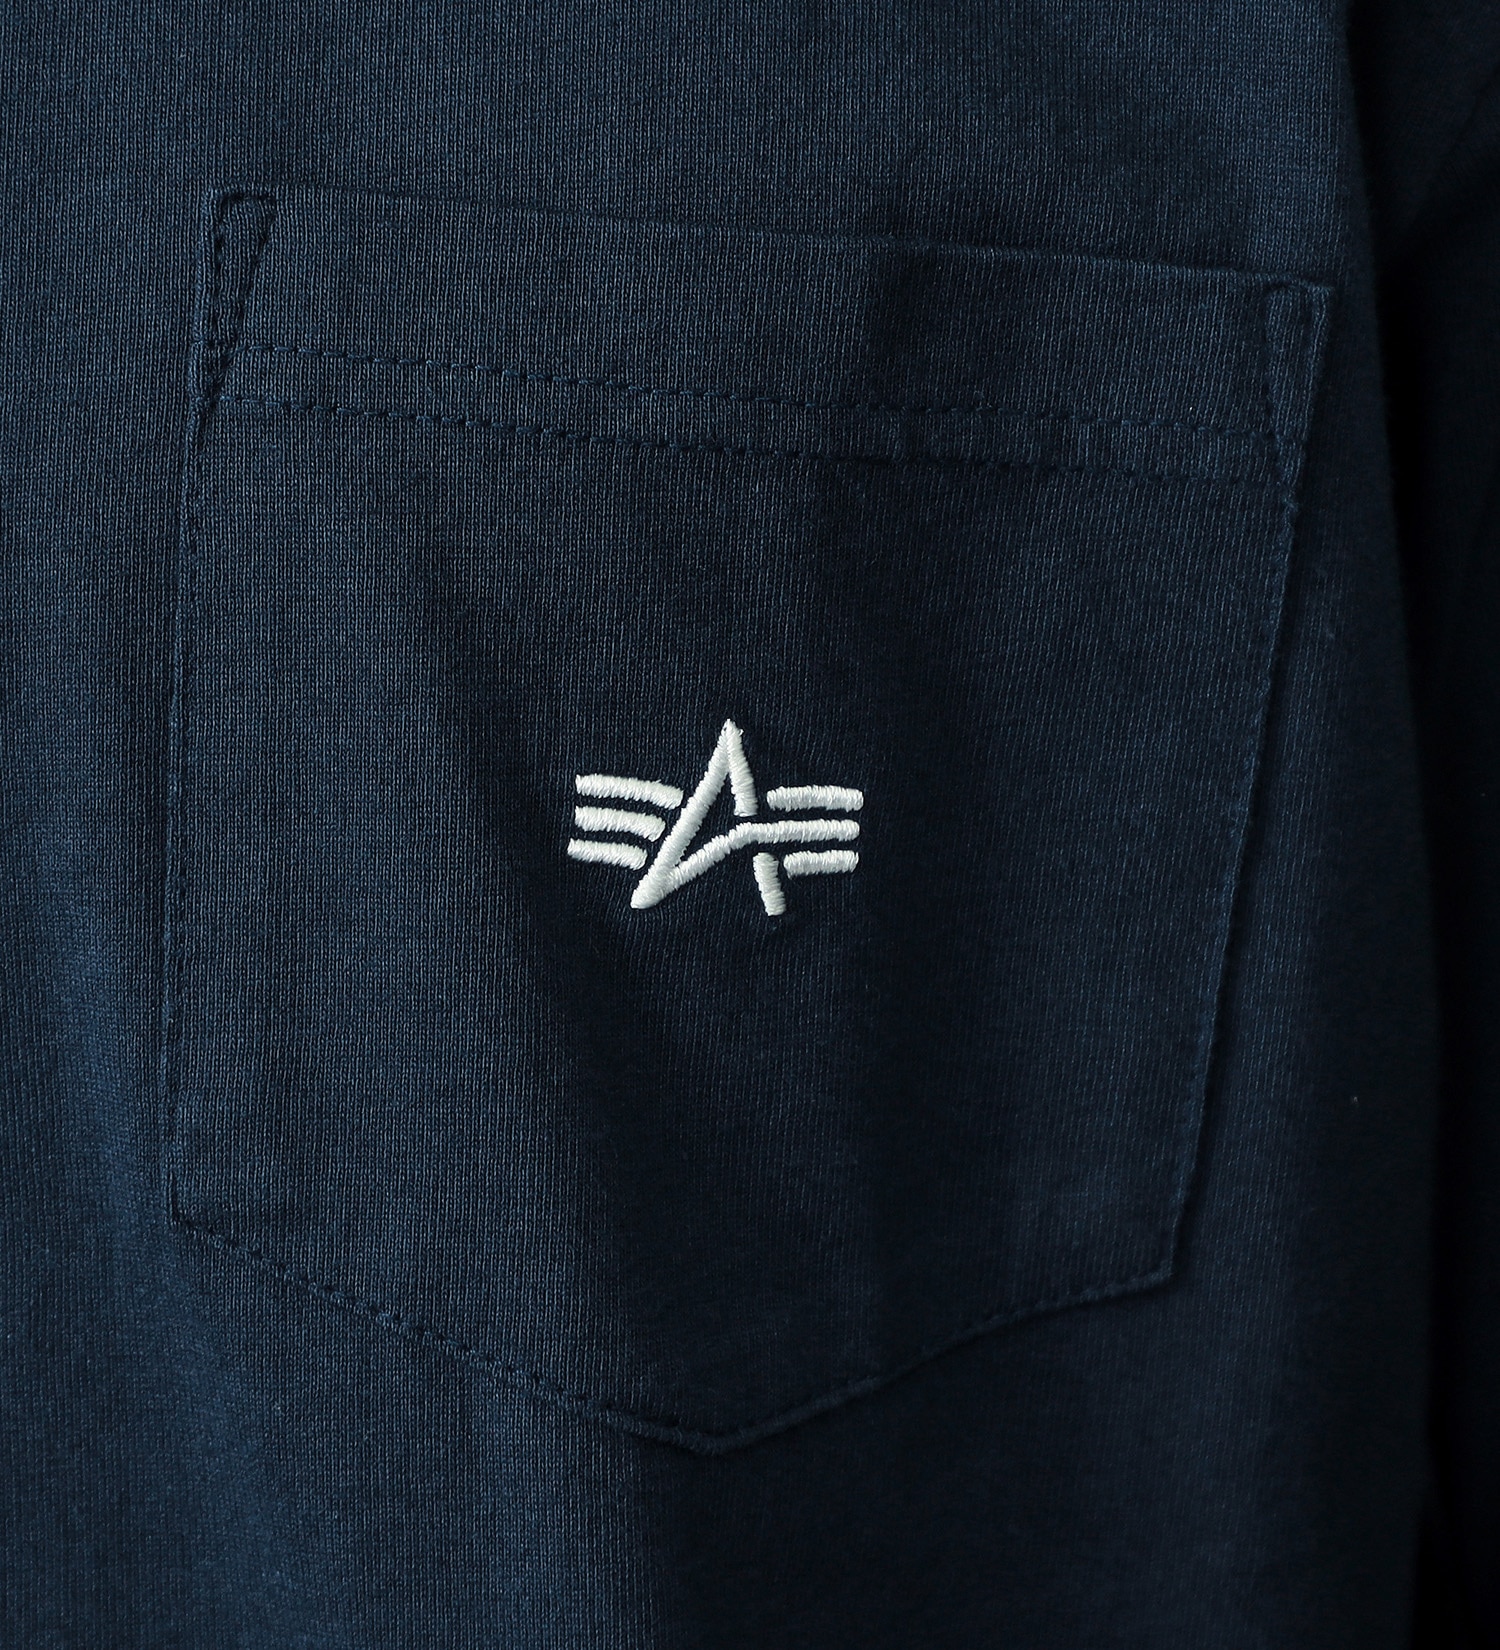 ALPHA(アルファ)のワンポイントロゴ ポケット付きTシャツ|トップス/Tシャツ/カットソー/メンズ|ネイビー